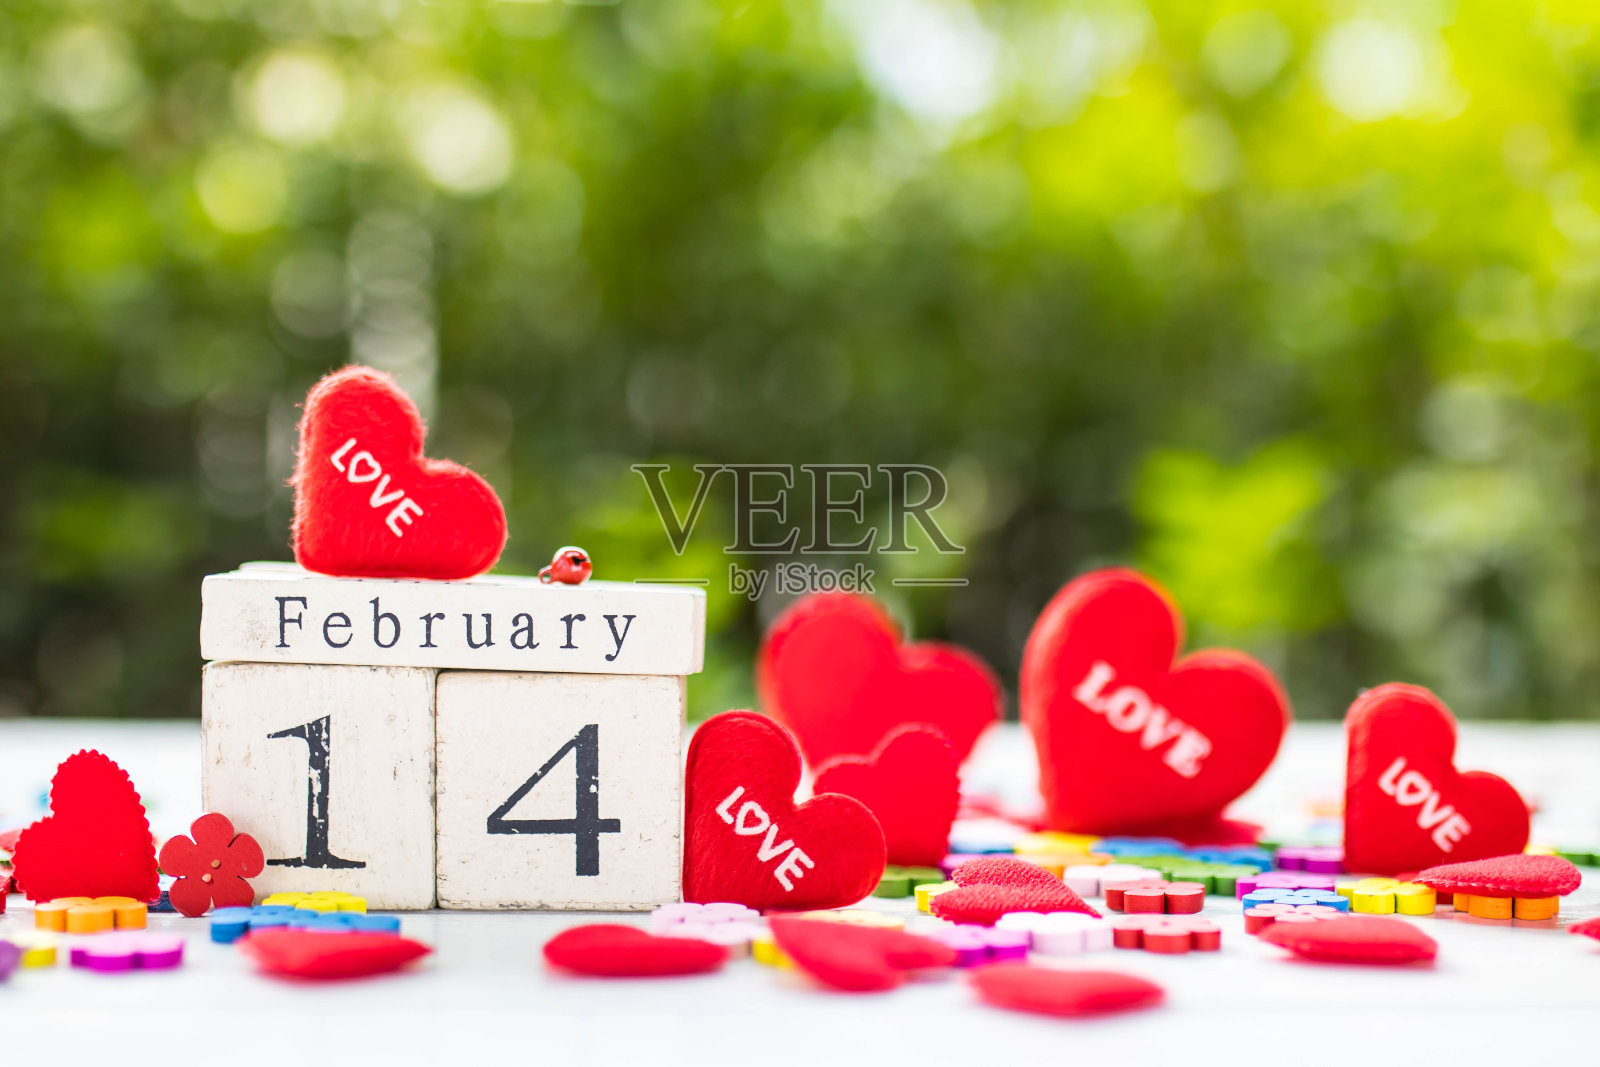 木制日历显示2月14日是情人节，周围还有红心照片摄影图片